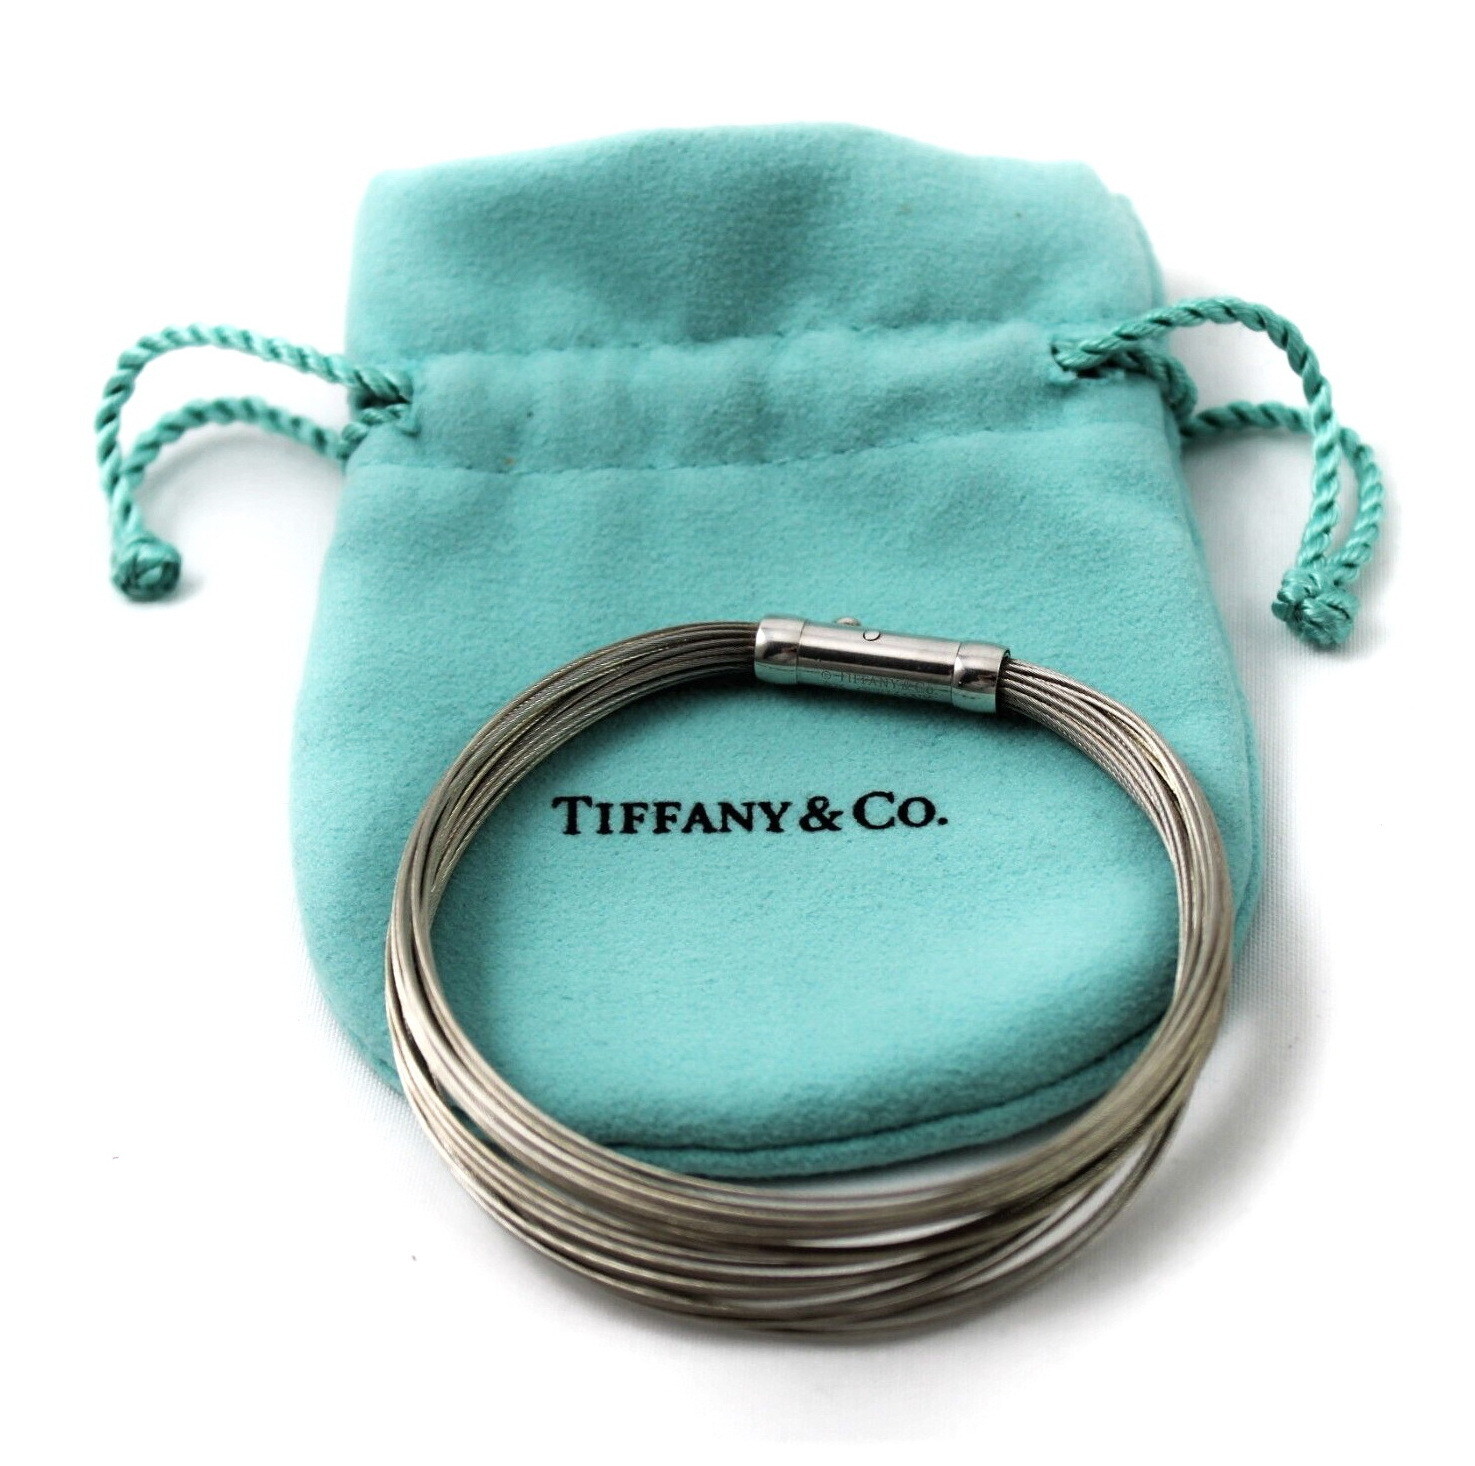 Tiffany & Co 30 Strand Sterling Silver Bangle Bracelet